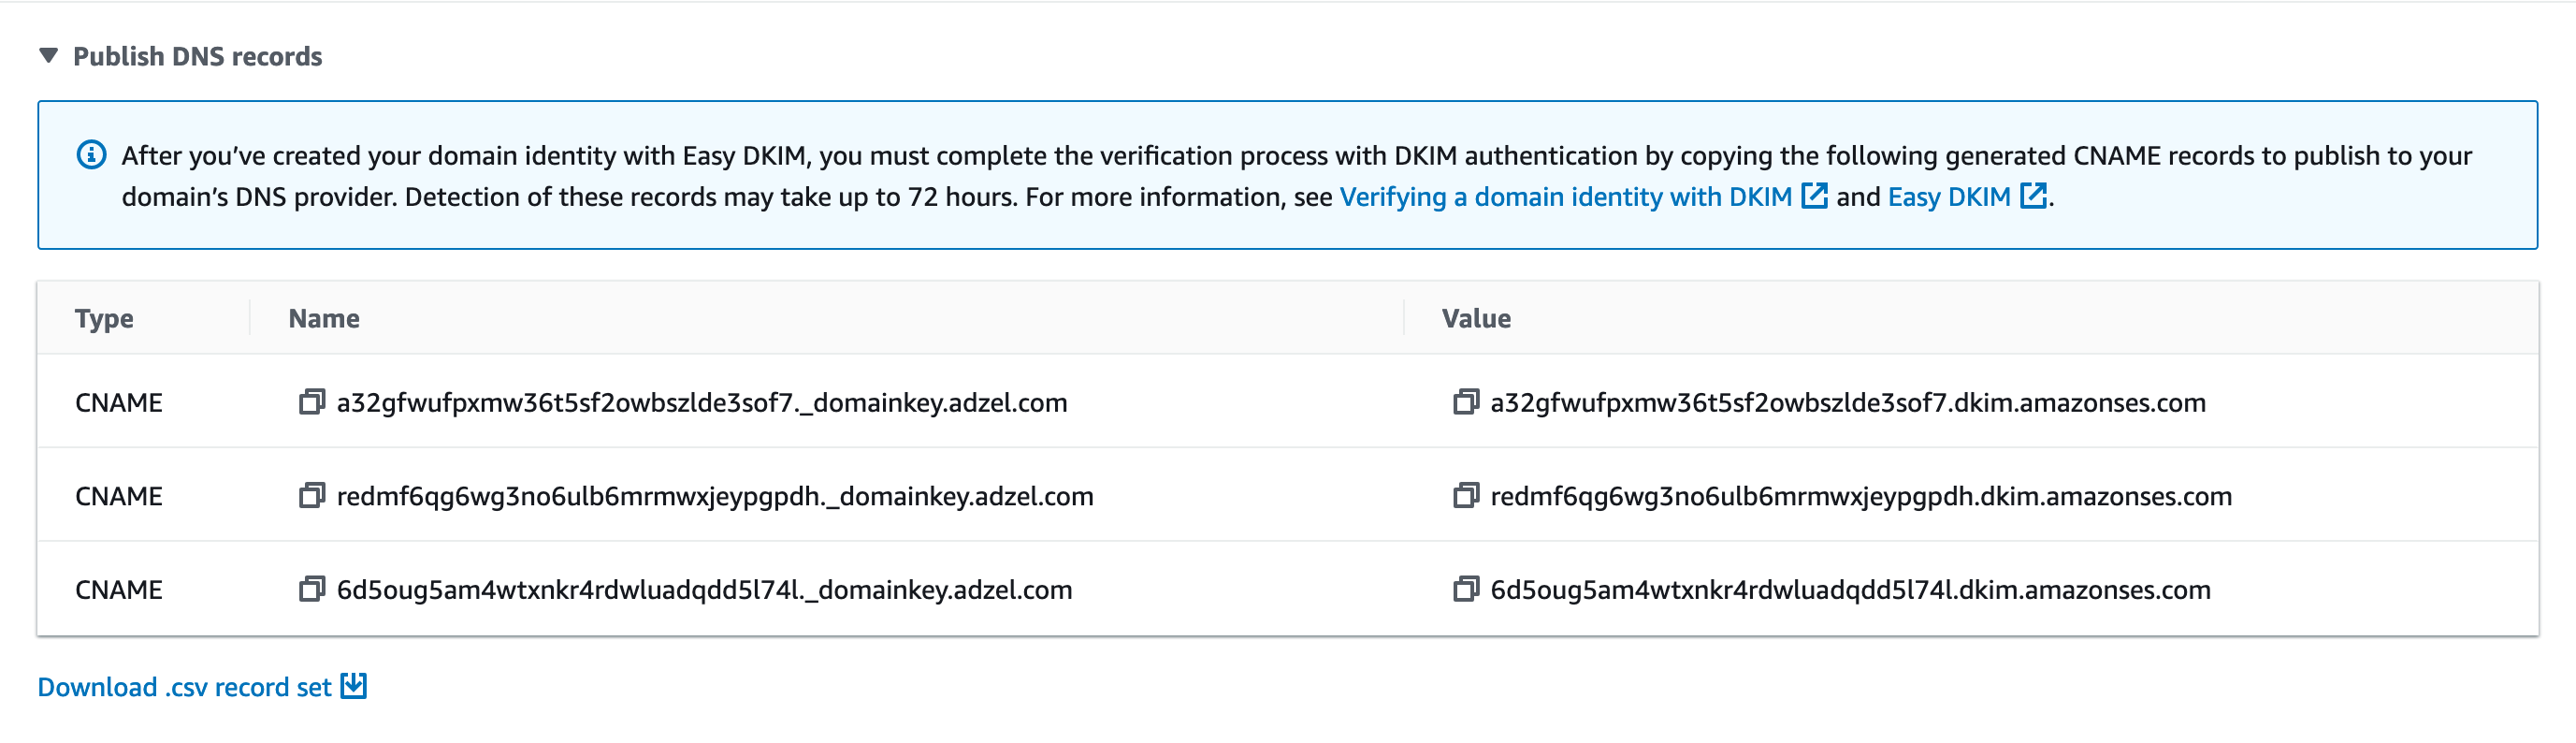 
                                        A seção DKIM de uma página de detalhes de uma identidade. Três registros CNAME fictícios são mostrados.
                                    